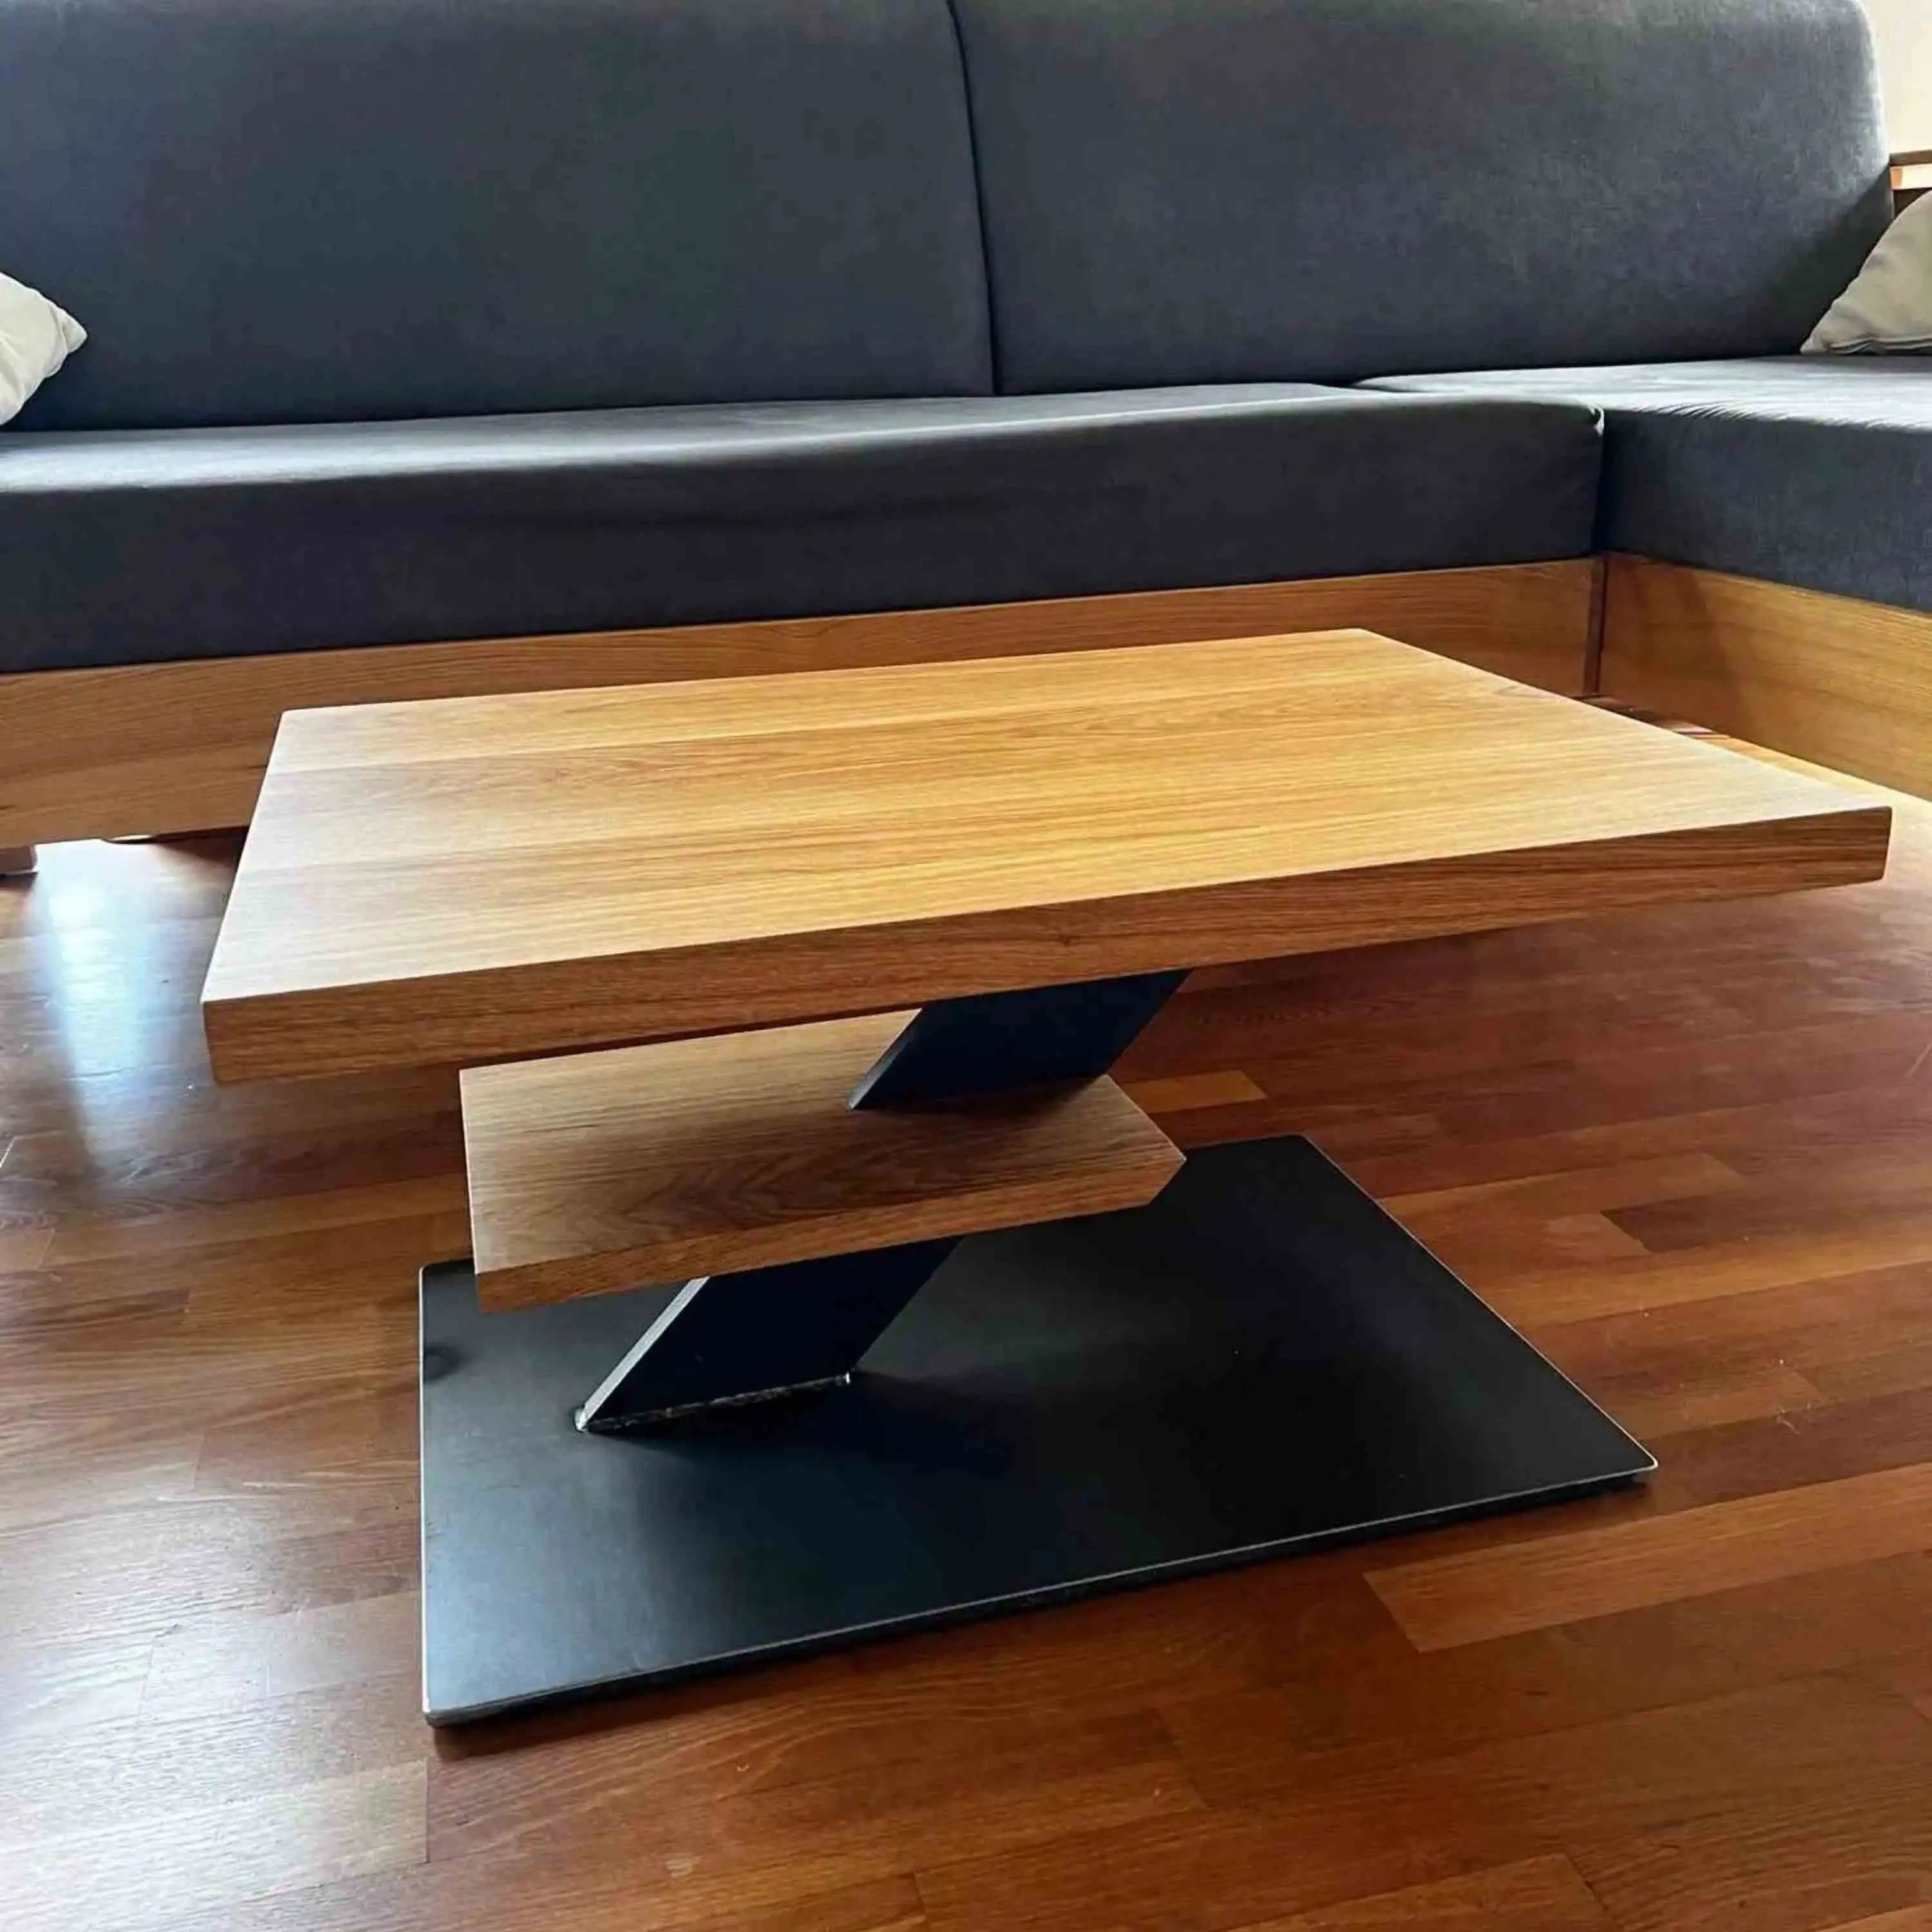 Ein stilvolles Möbelstück für dein Wohnzimmer, das Eleganz und Funktionalität vereint.